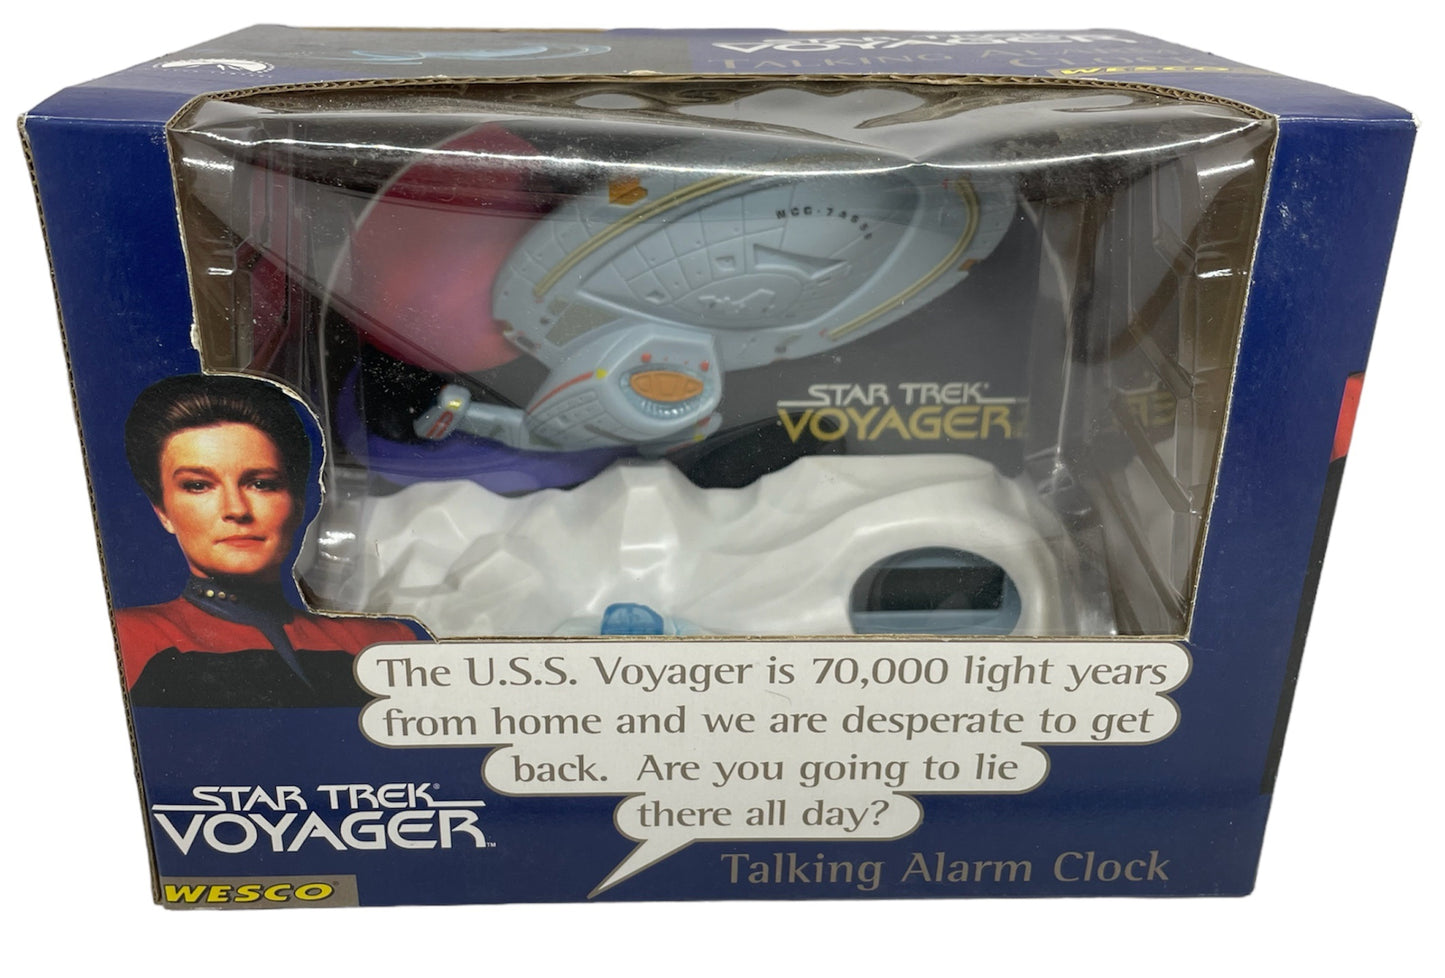 Vintage 1996 Star Trek Voyager NCC-74565 Talking Alarm Clock - Factory Sealed Shop Stock Room Find